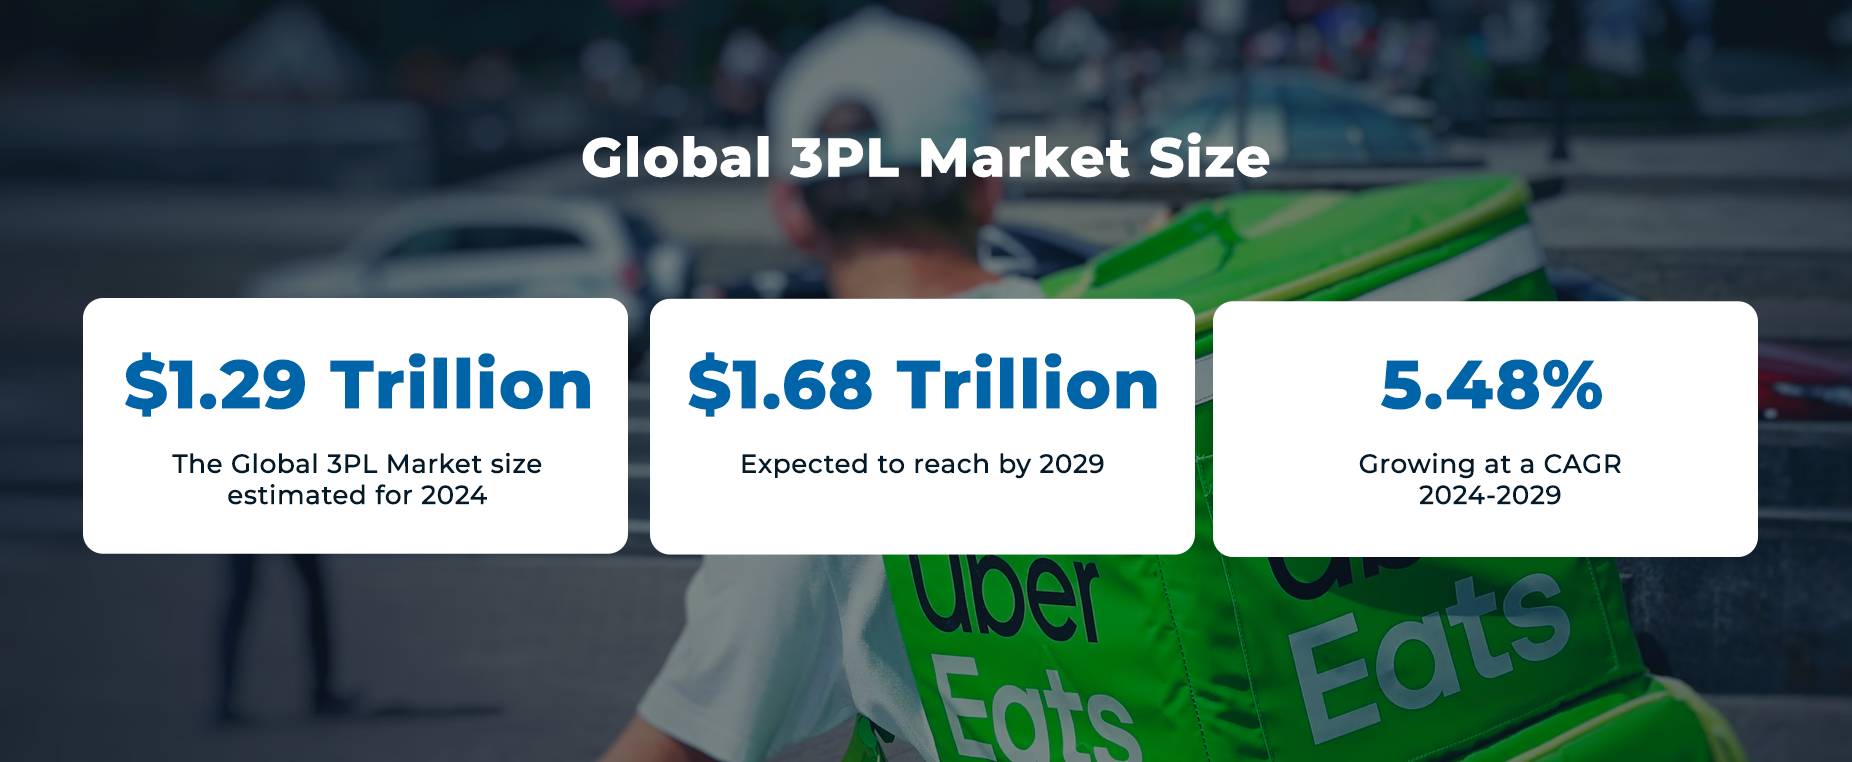 Globale 3PL-Marktgröße und Statistiken